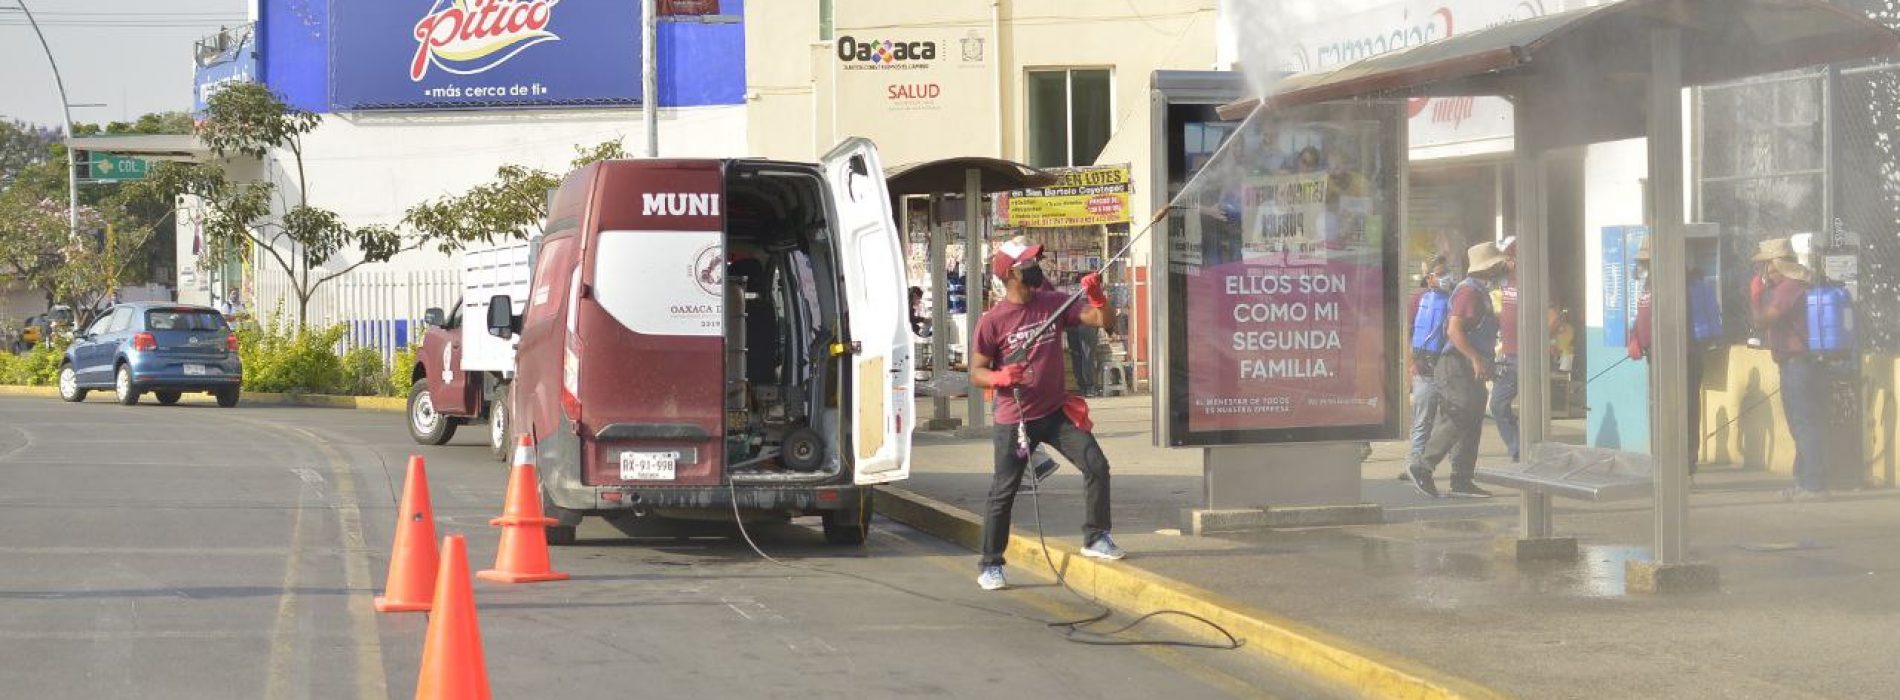 Intensifica Ayuntamiento desinfección de espacios públicos de Oaxaca de Juárez